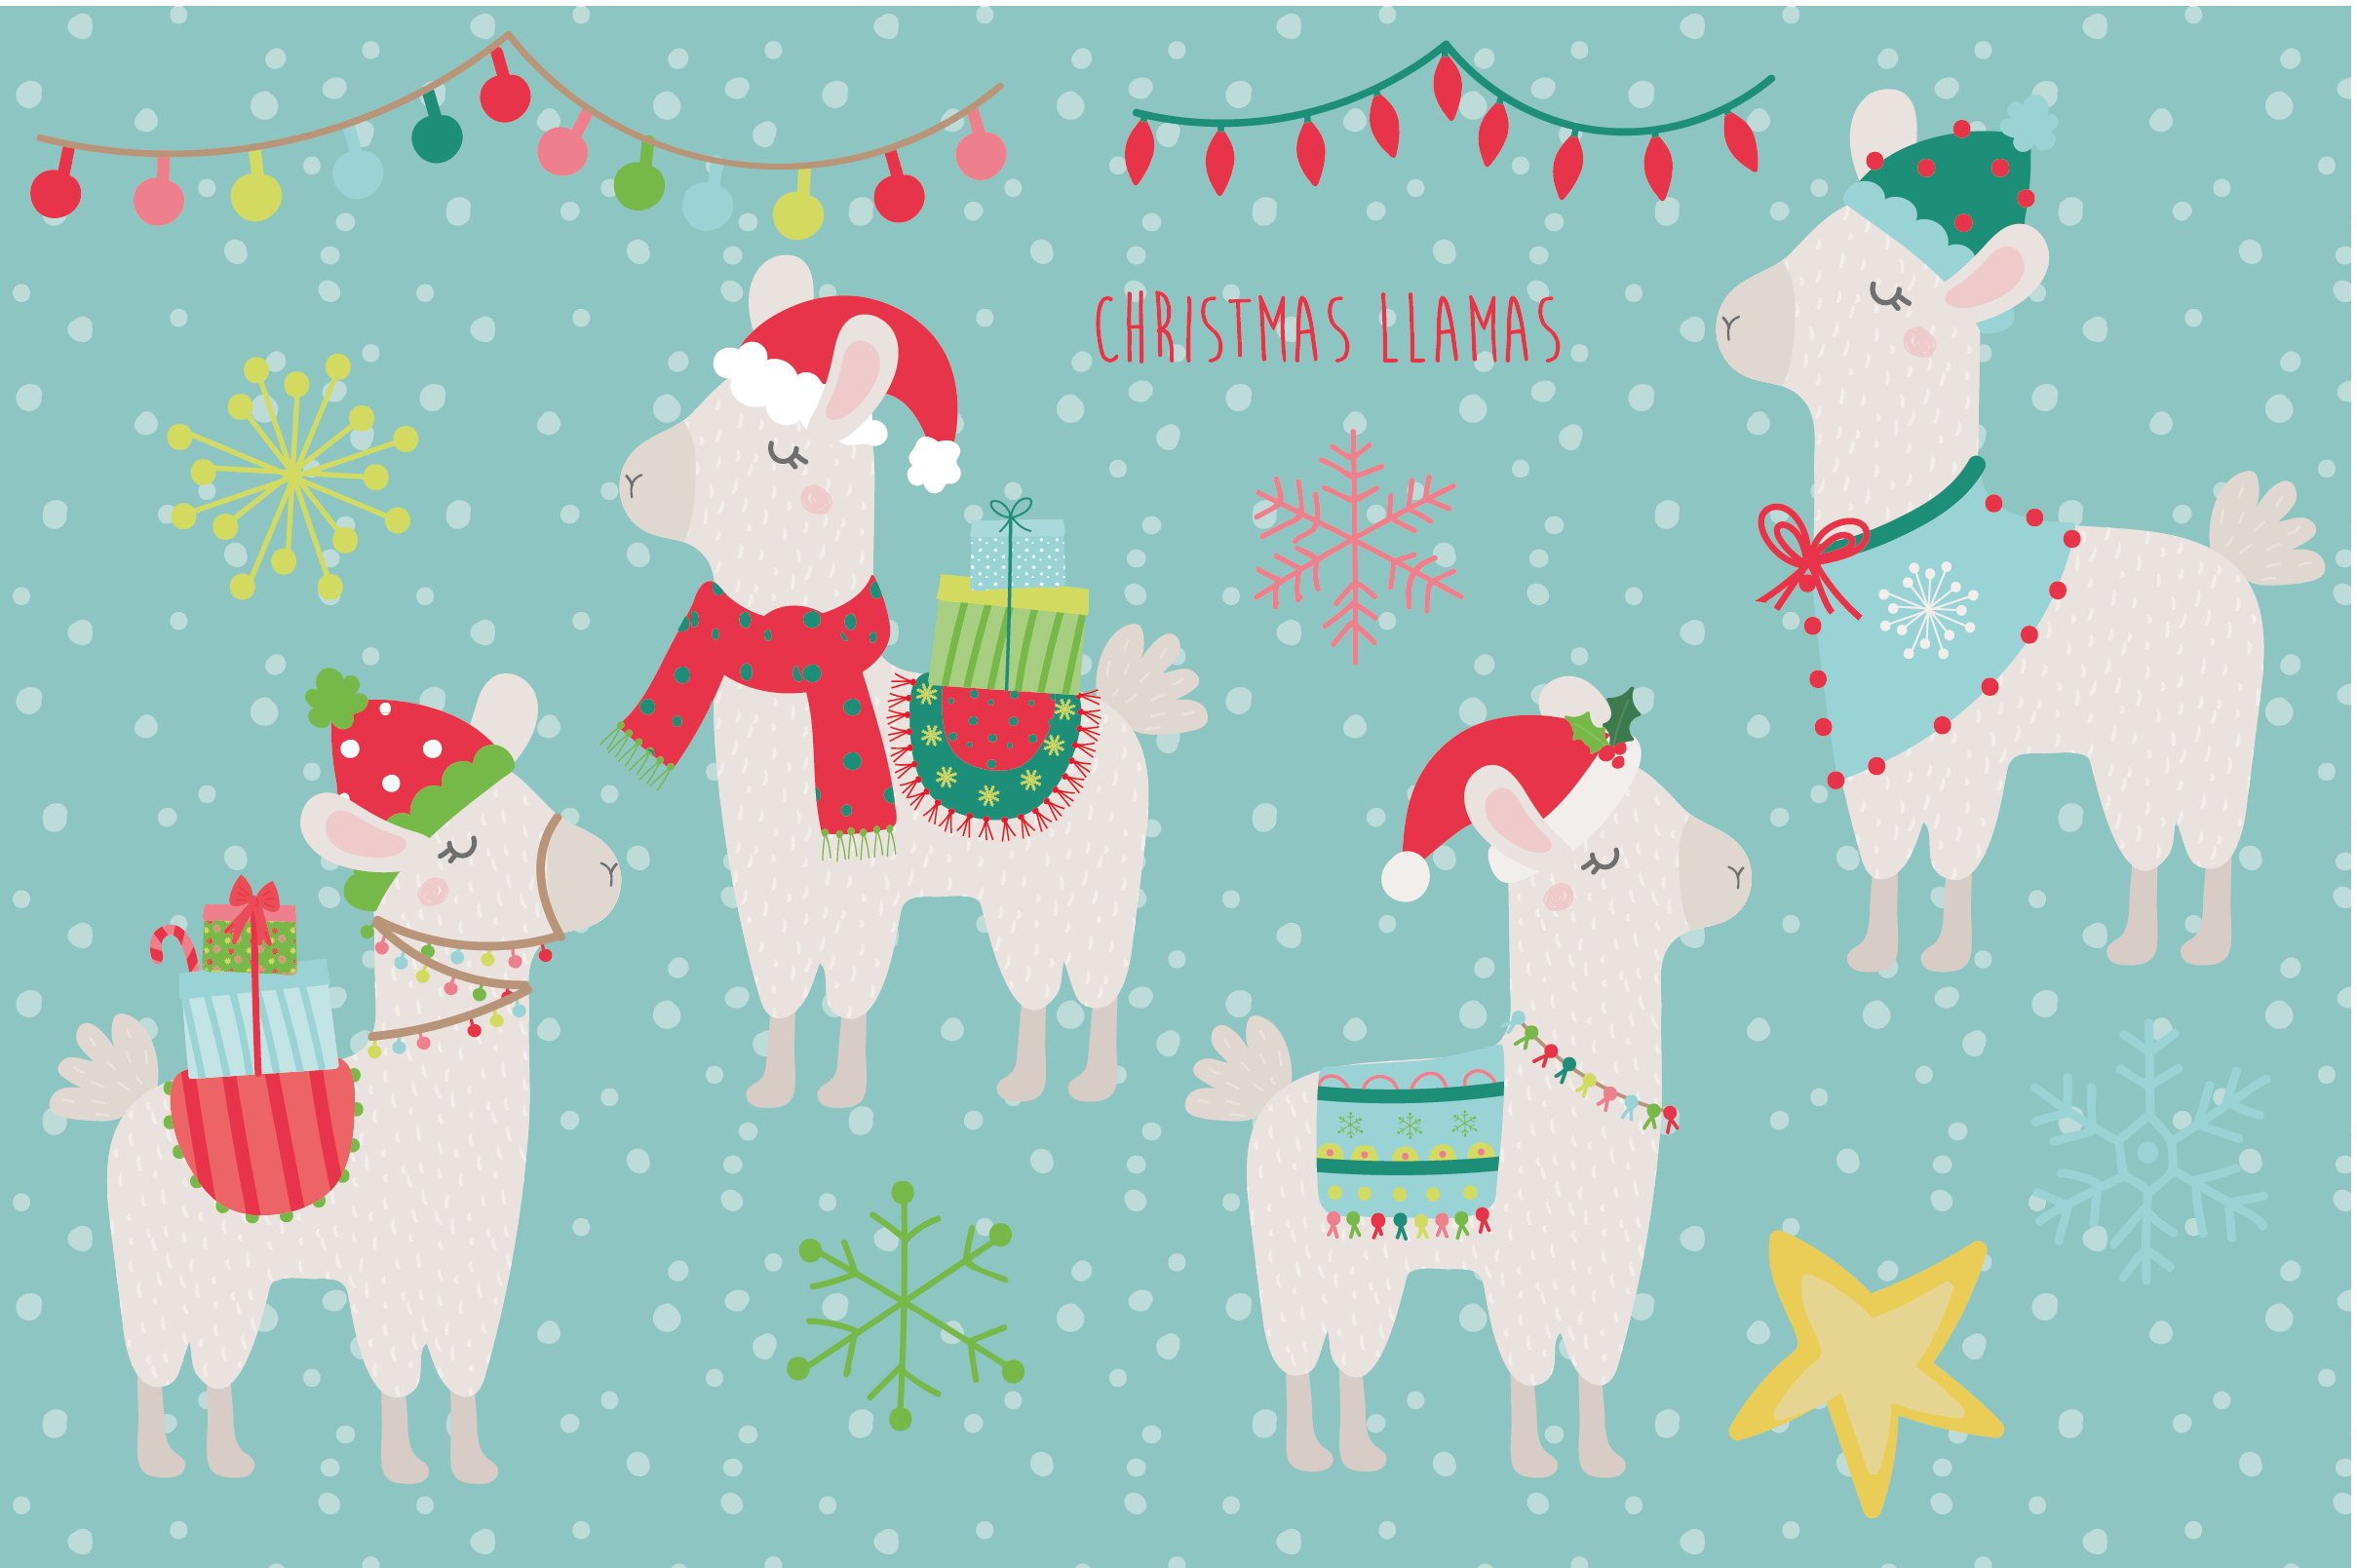 Christmas Llamas preview image.